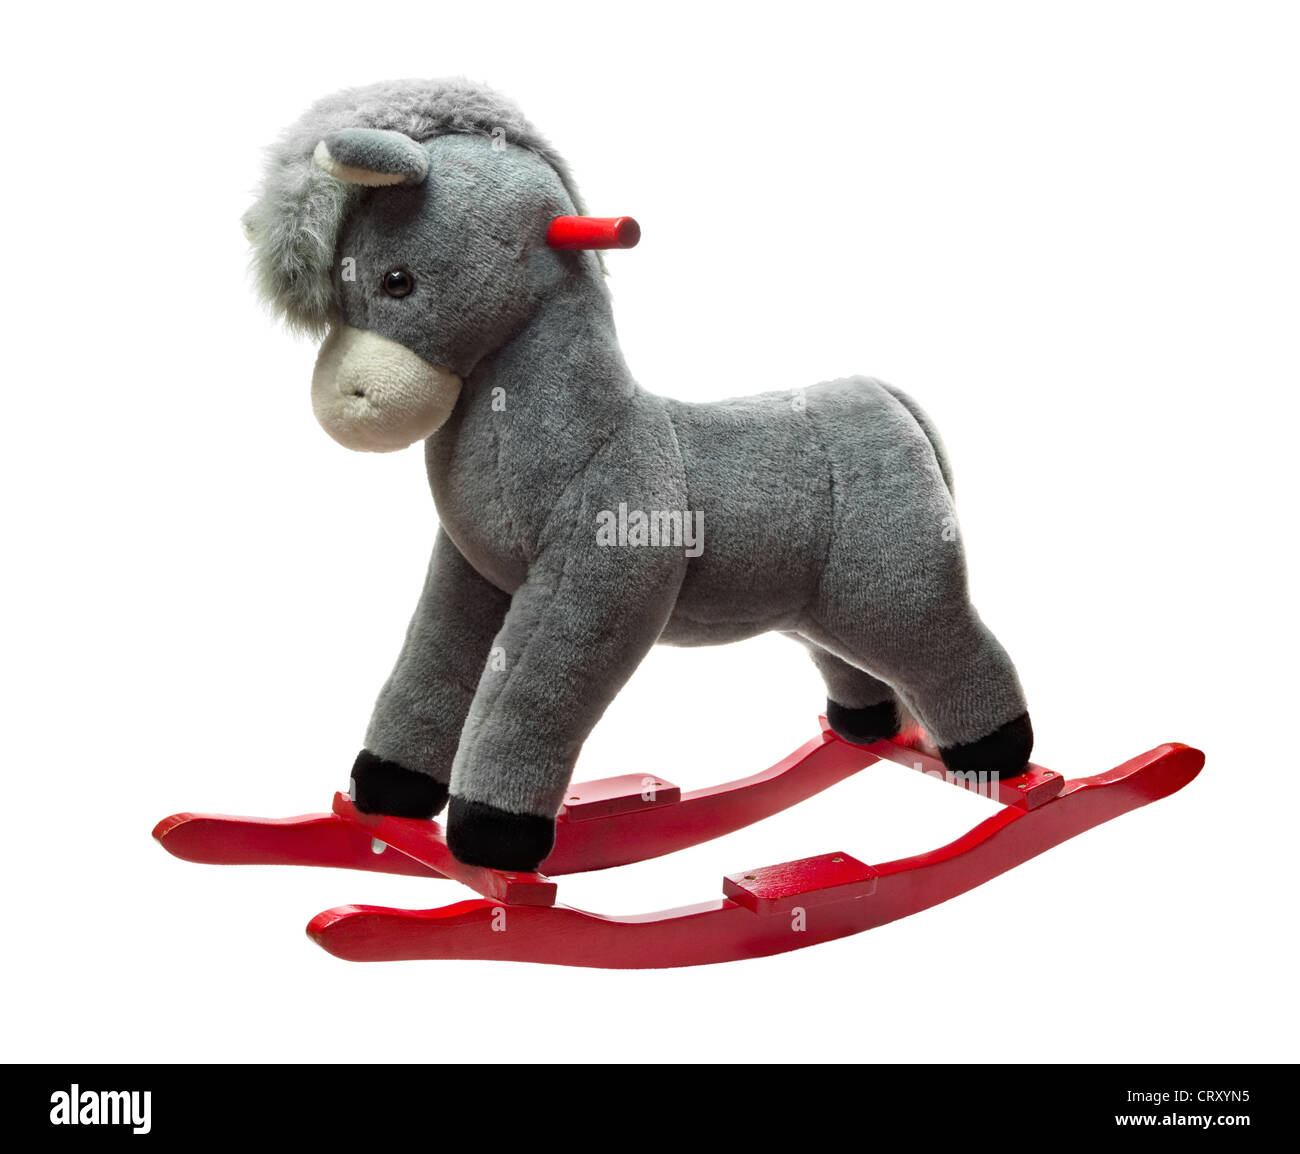 Plush rocking toy donkey isolated on white Stock Photo